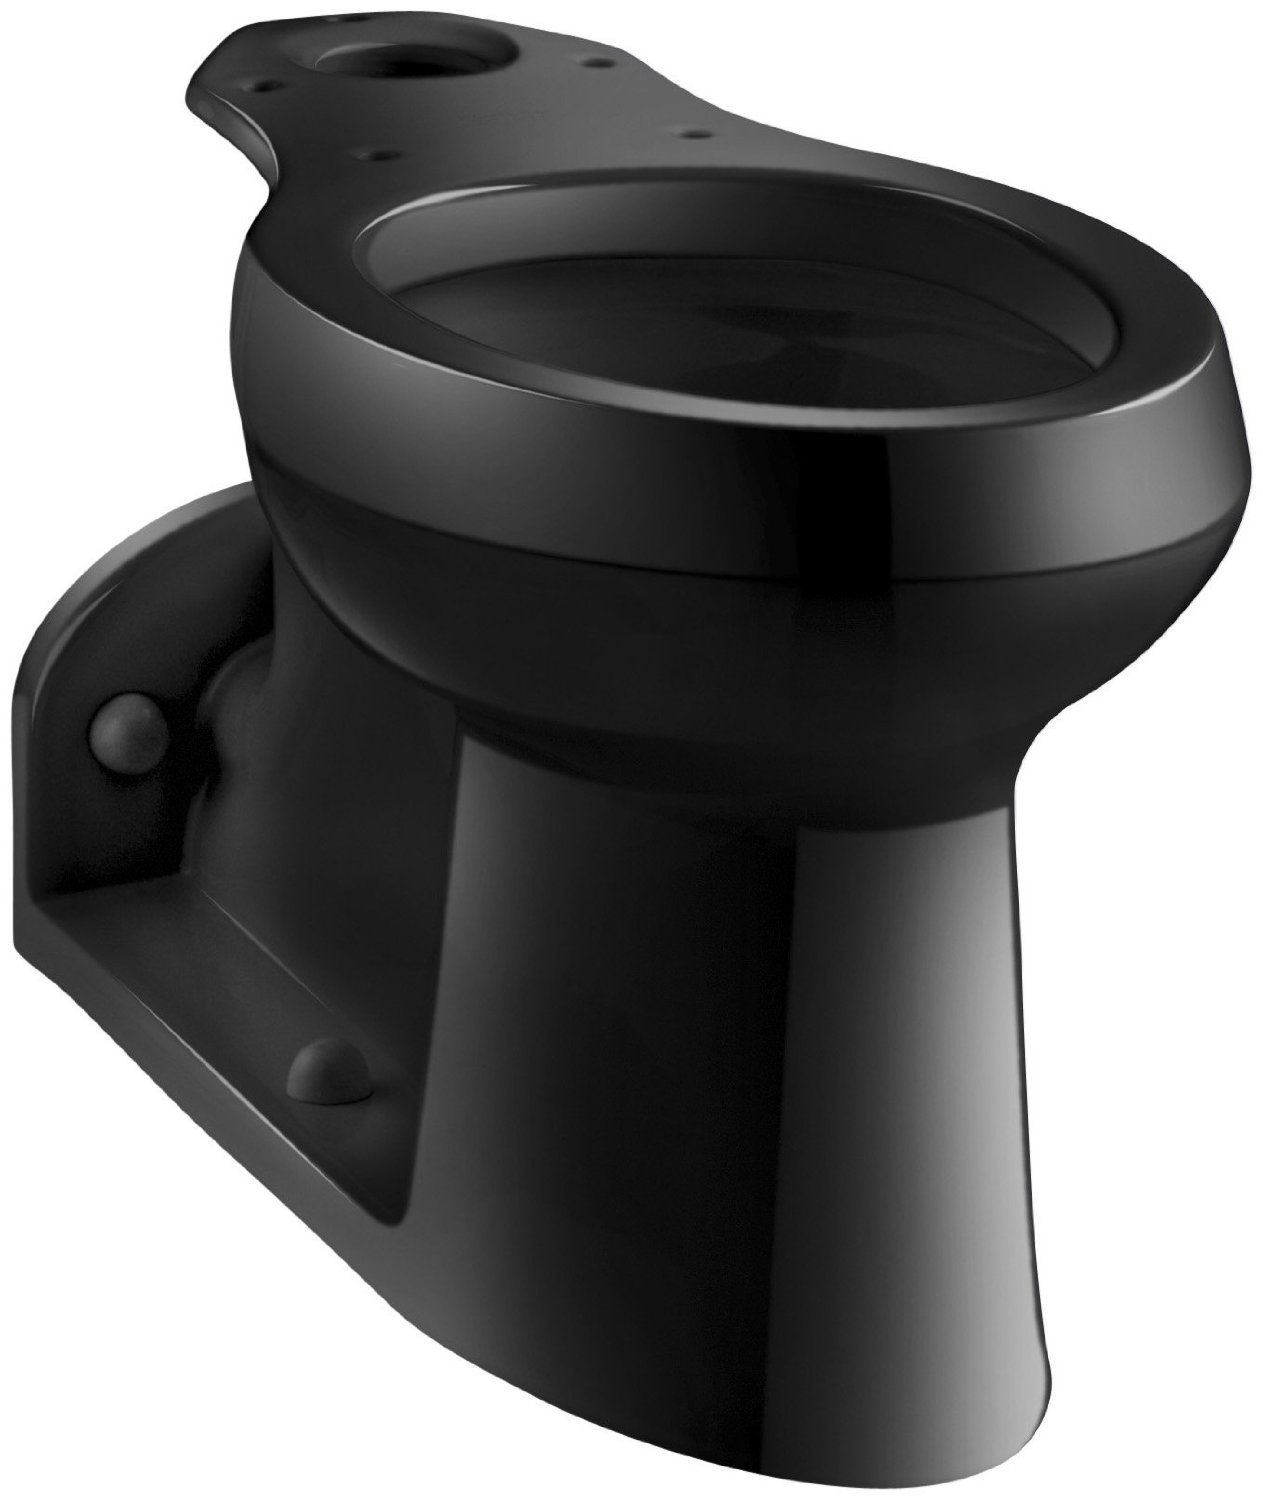 Kohler K-4305-7 Black Black Barrington GPF Elongated Comfort Height  Toilet Bowl Only Less Seat